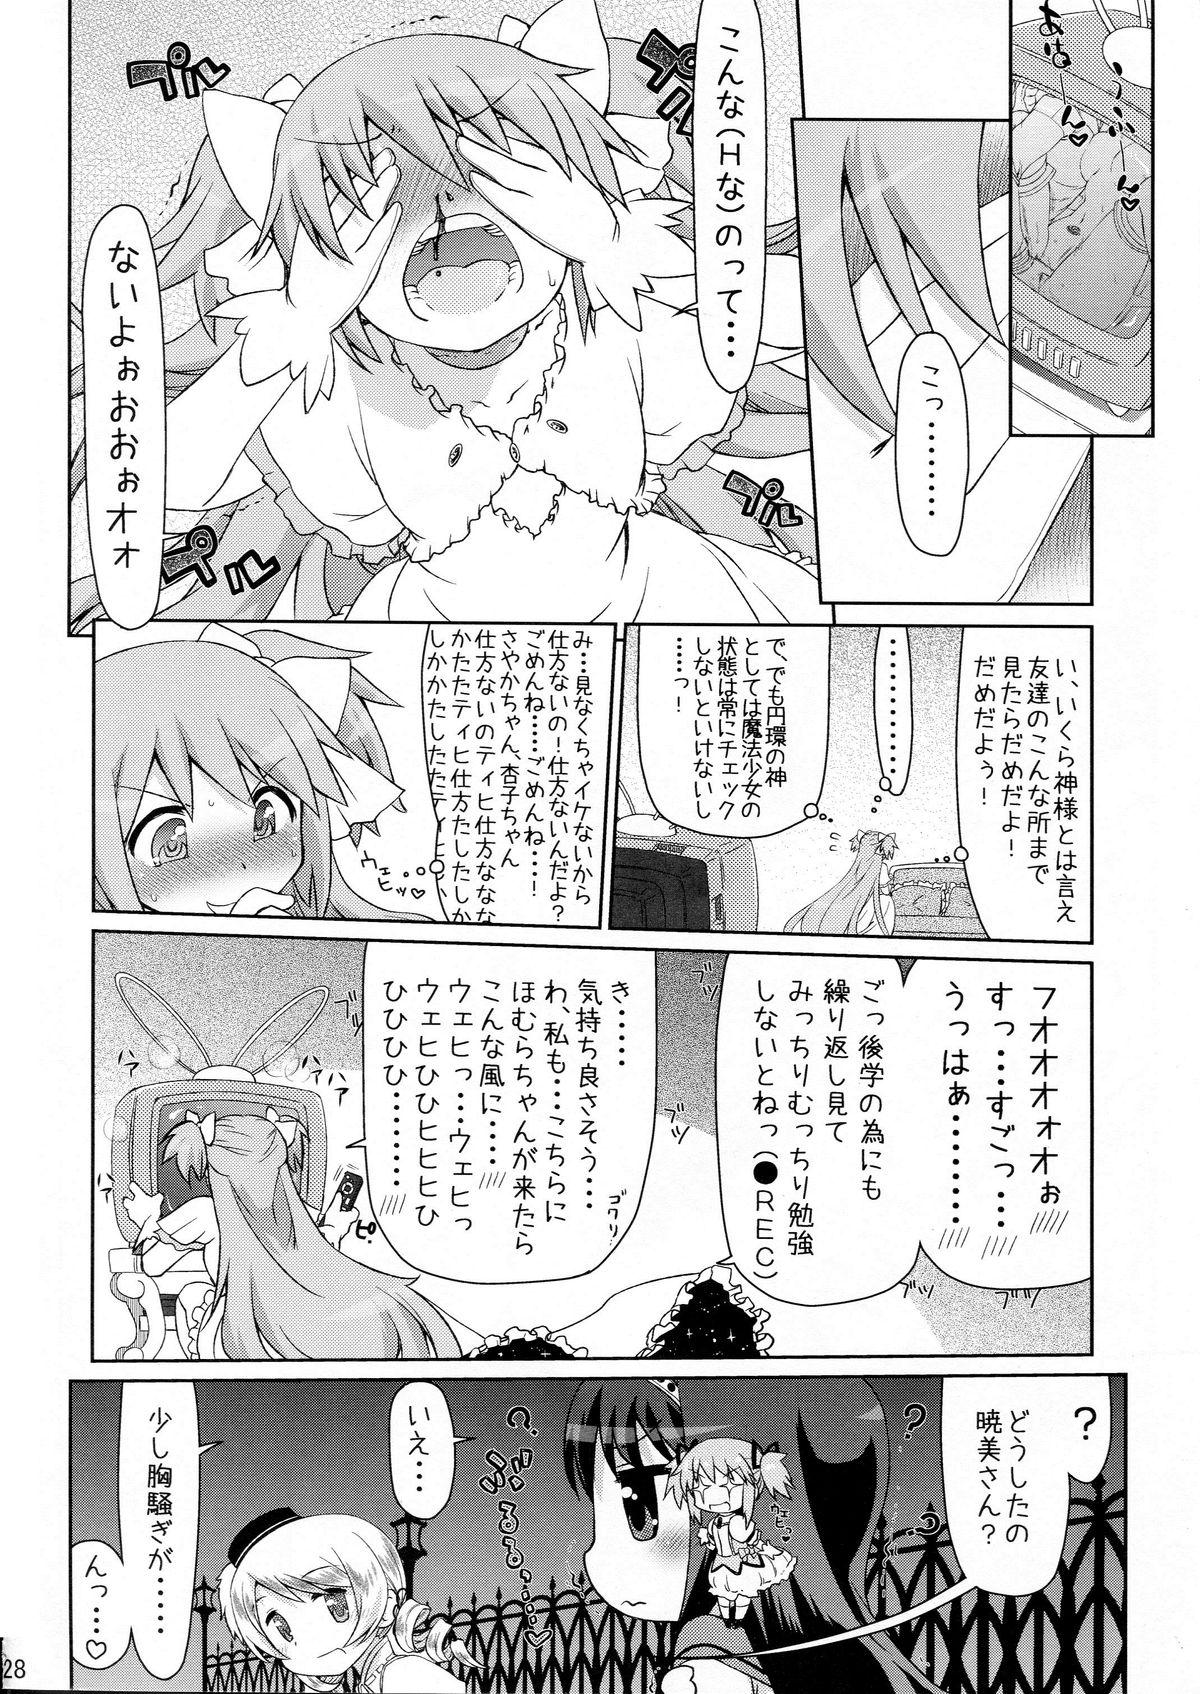 Famosa Gyakushuu no Akai Hito - Puella magi madoka magica Gostosas - Page 28